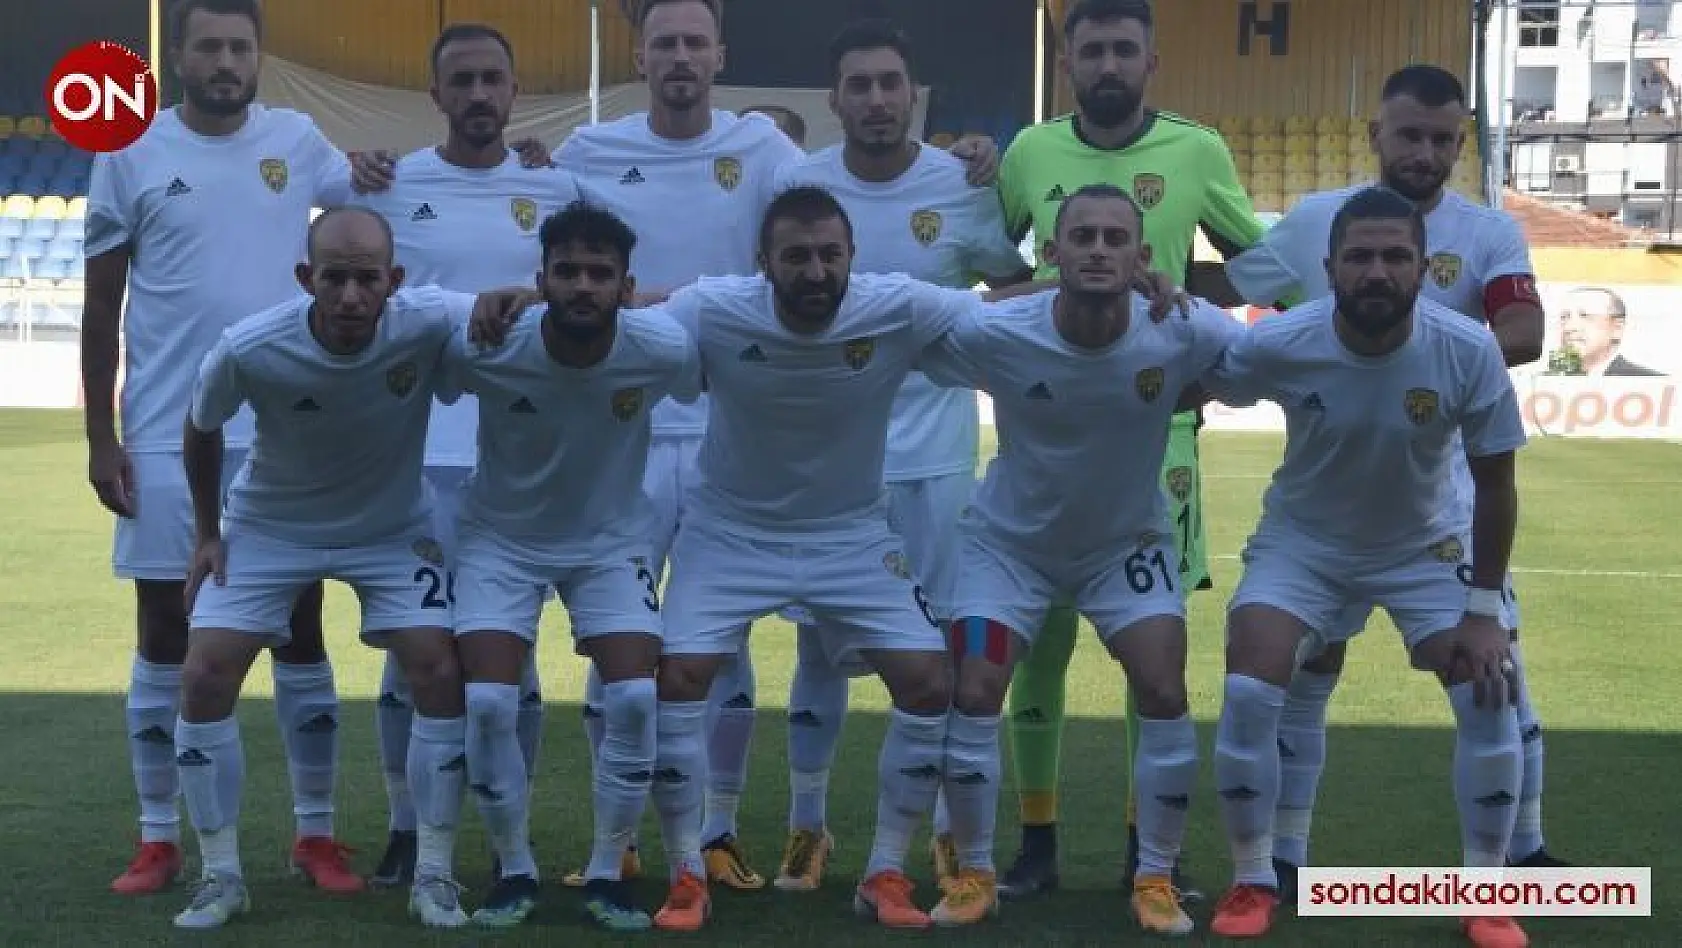 Aliağaspor FK, yarı finalde